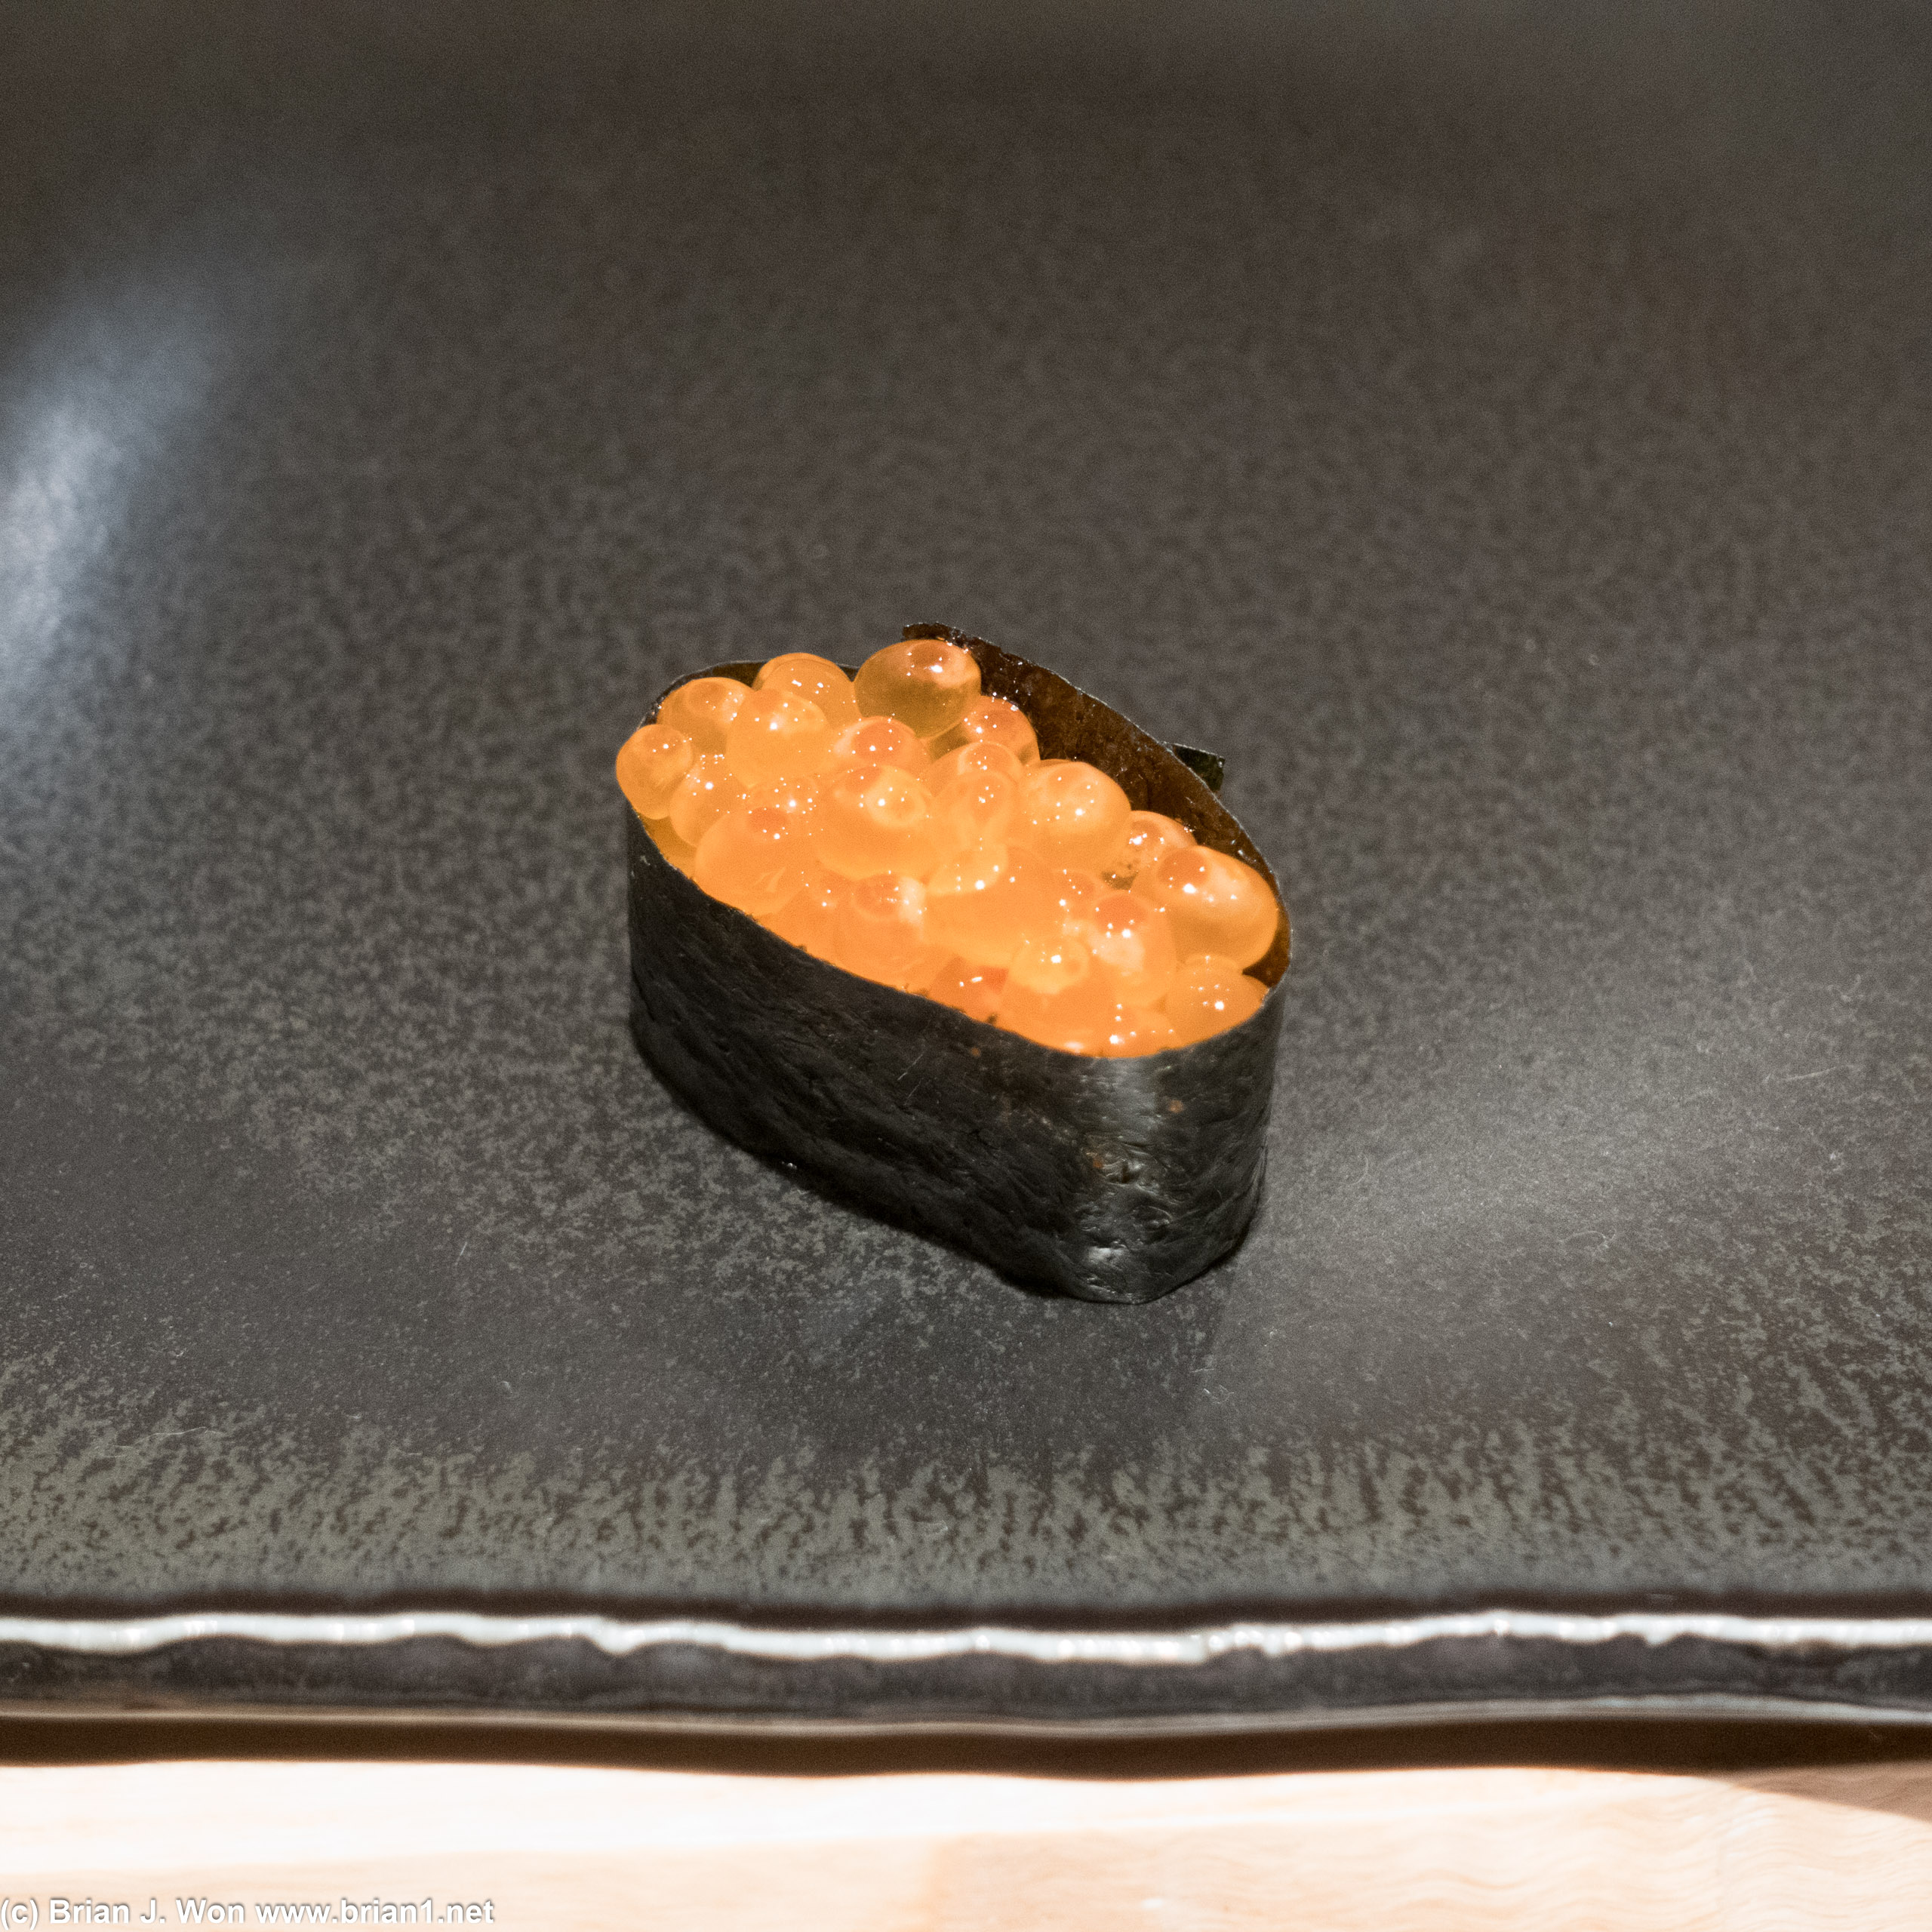 Ikura (salmon roe).